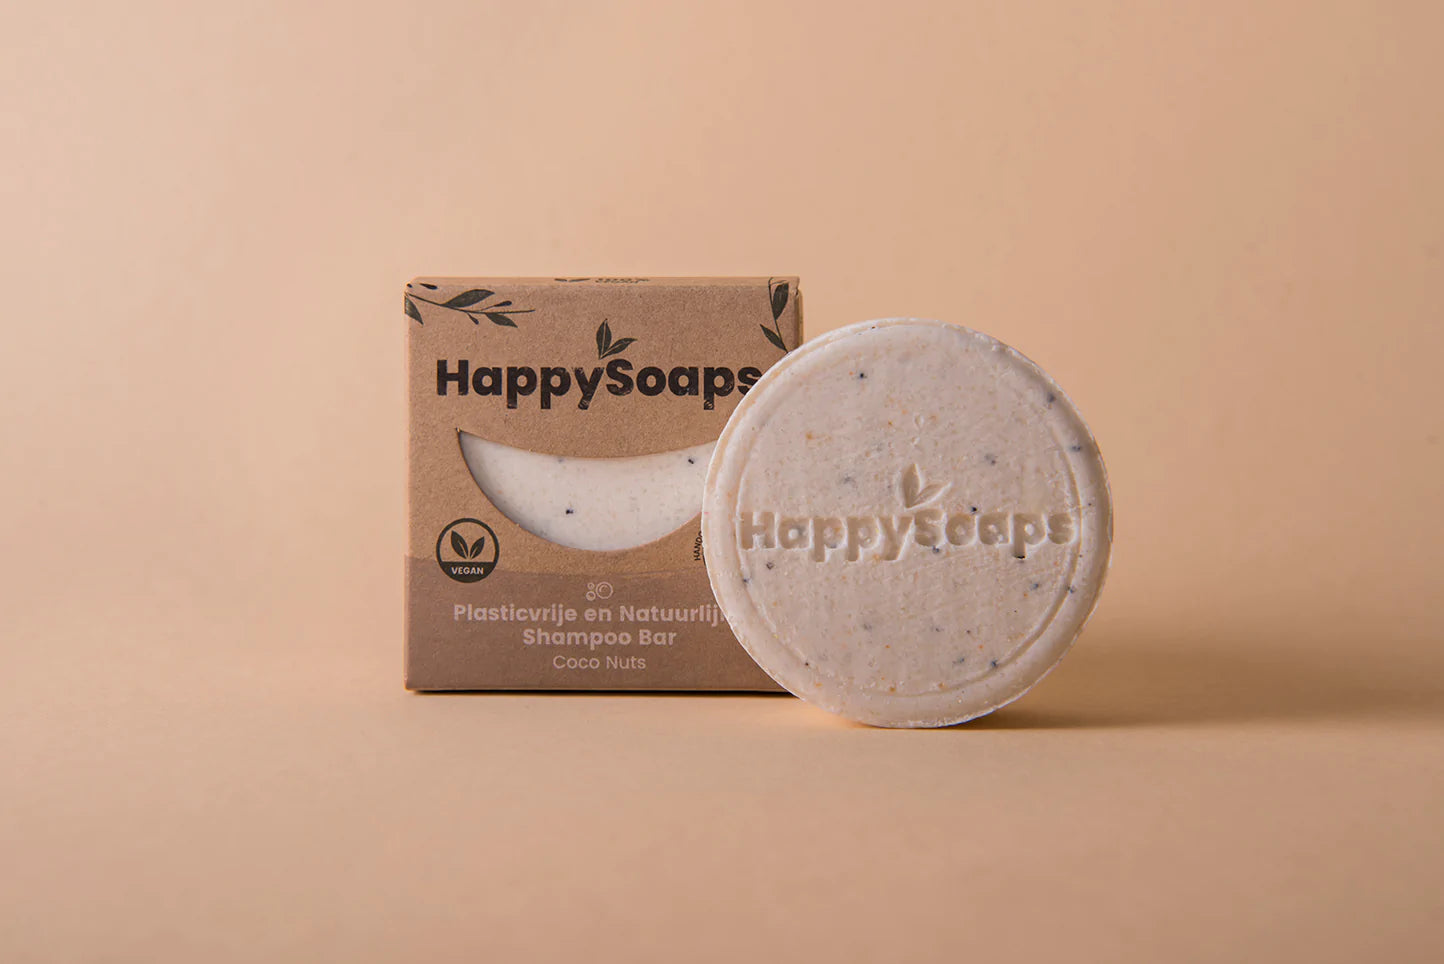 Shampoo Bar - Coco Nuts, HappySoaps NL